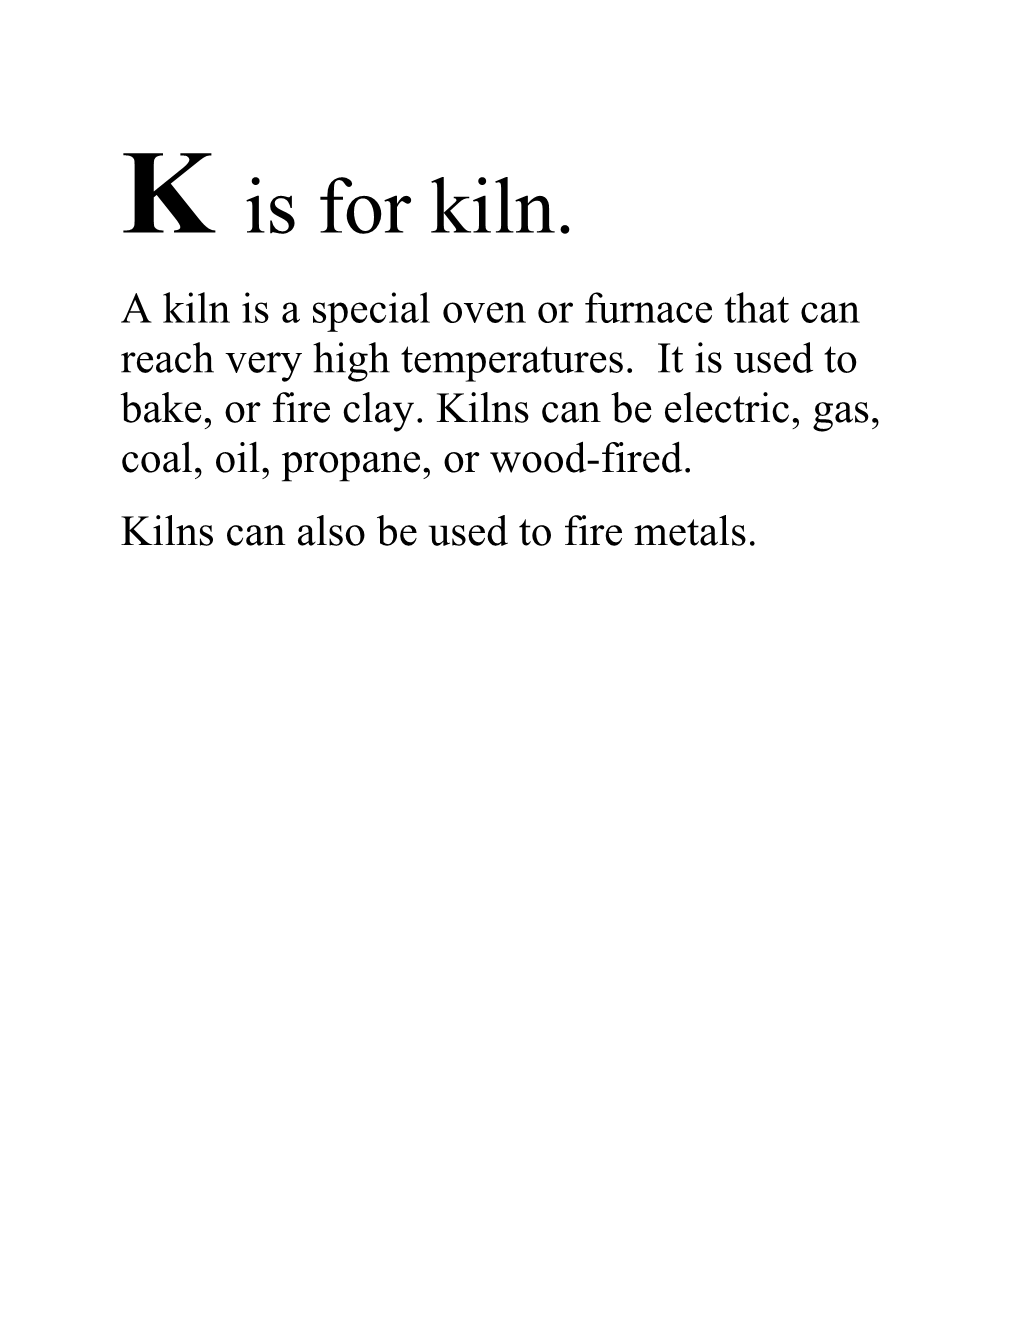 K Is for Kiln